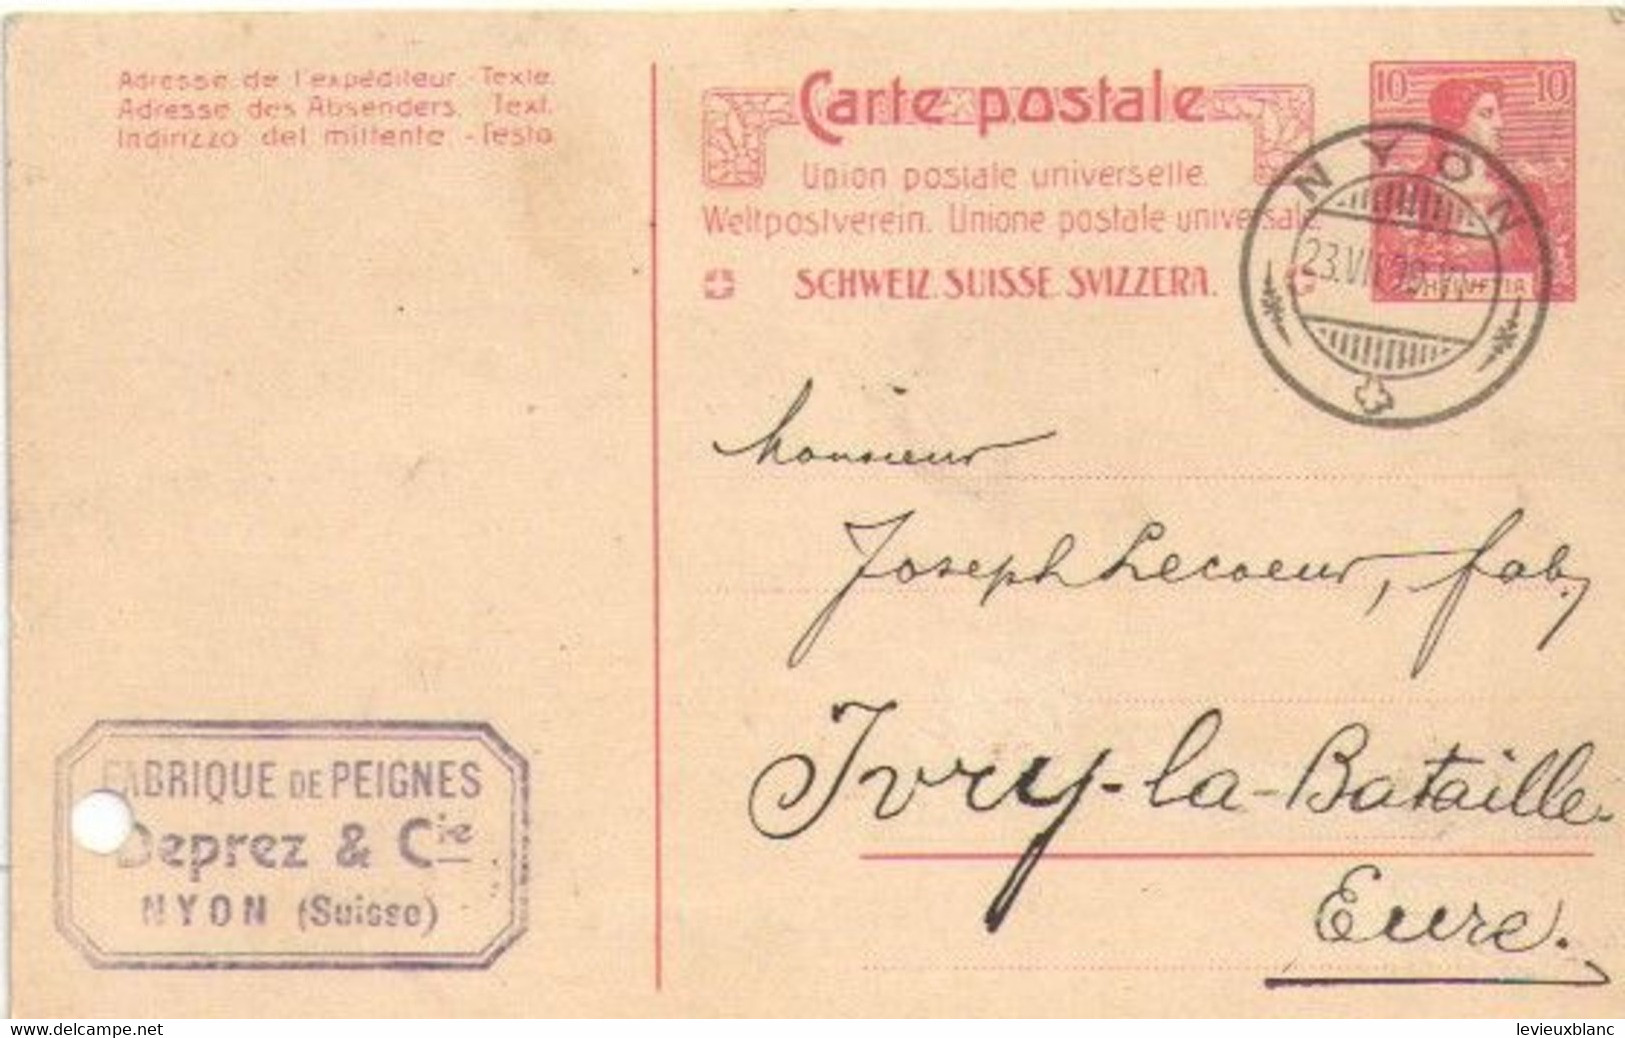 Fabrication De Peignes En Ivoire/Joseph LECOEUR/Ivry La Bataille/Commande/DEPREZ & Cie / NYON /SUISSE/1909     FACT495 - Svizzera